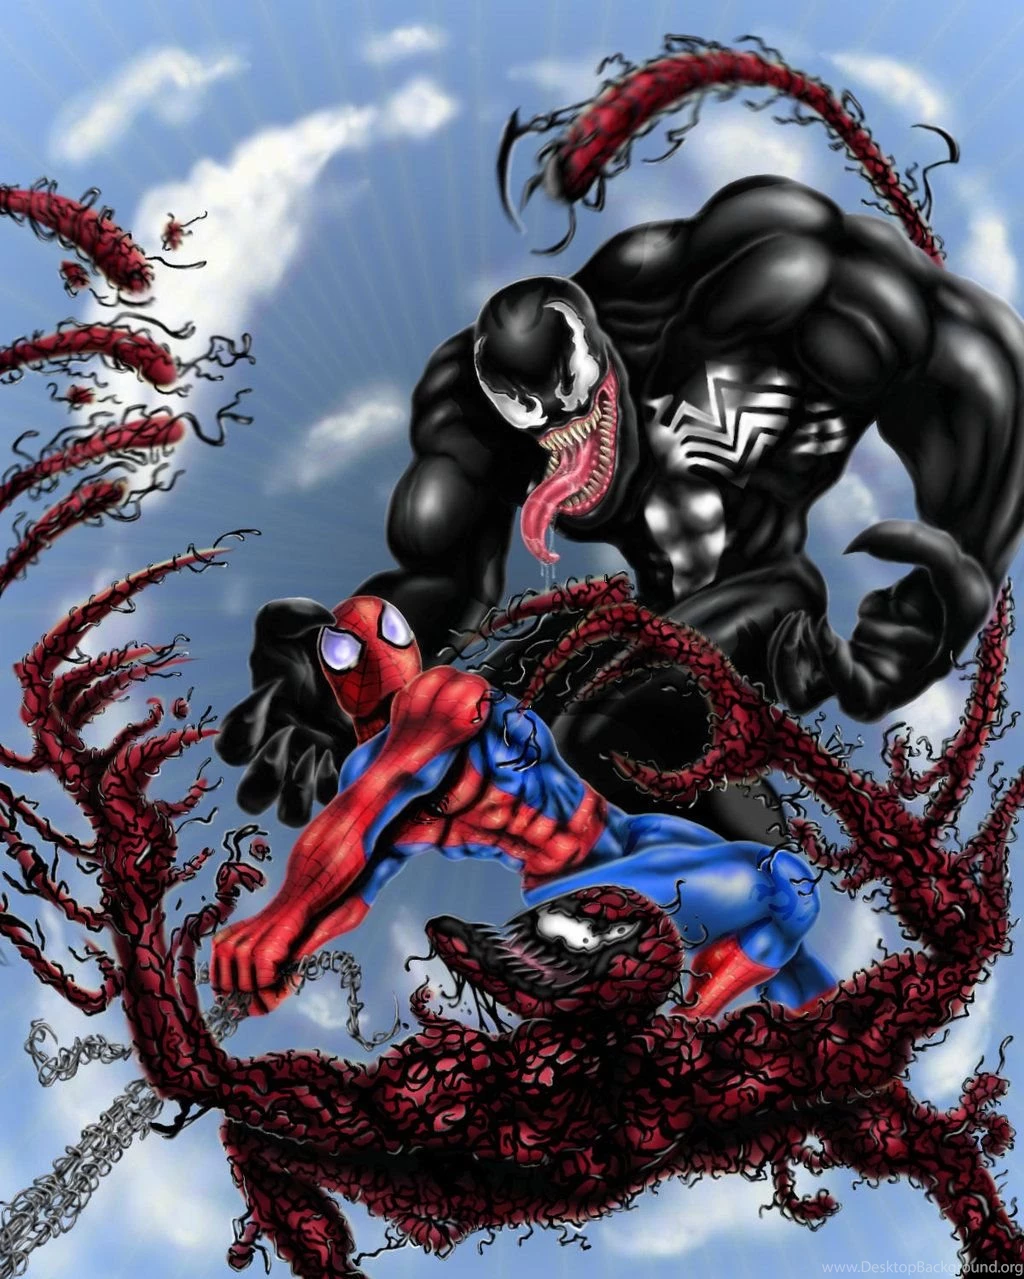 Pic Carnage Vs Venom Vs Spiderman. 